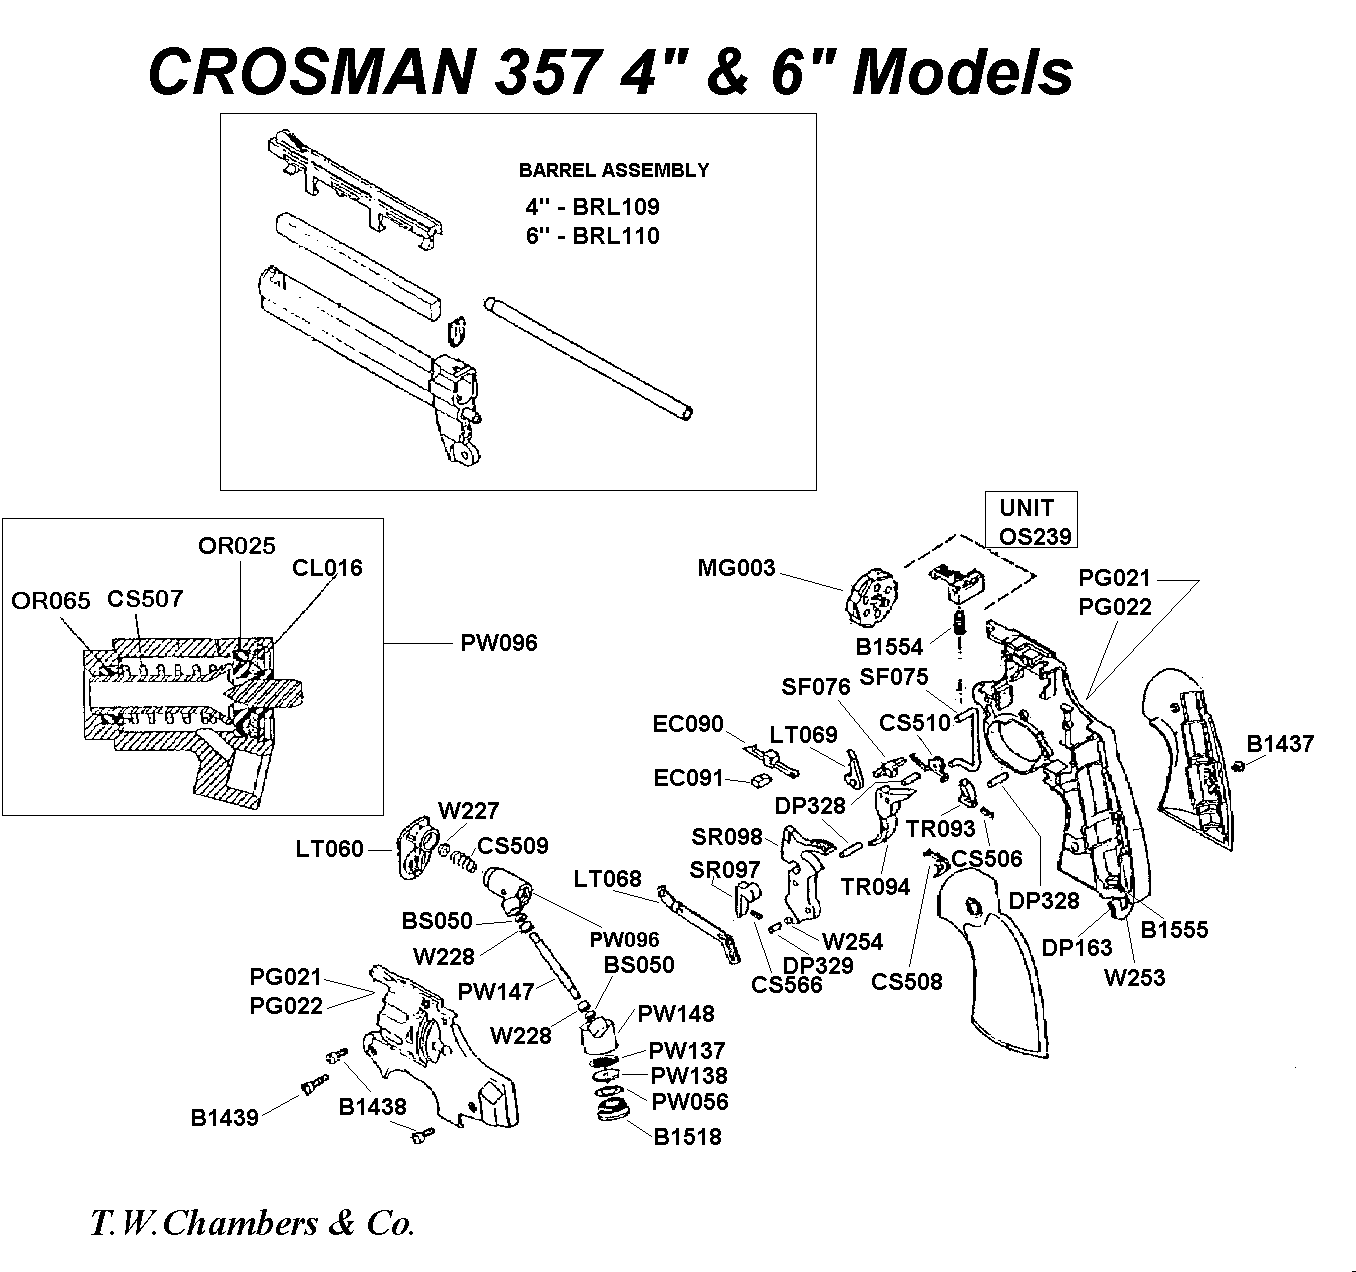 Crossman 357 problème droigt élévateur O76u